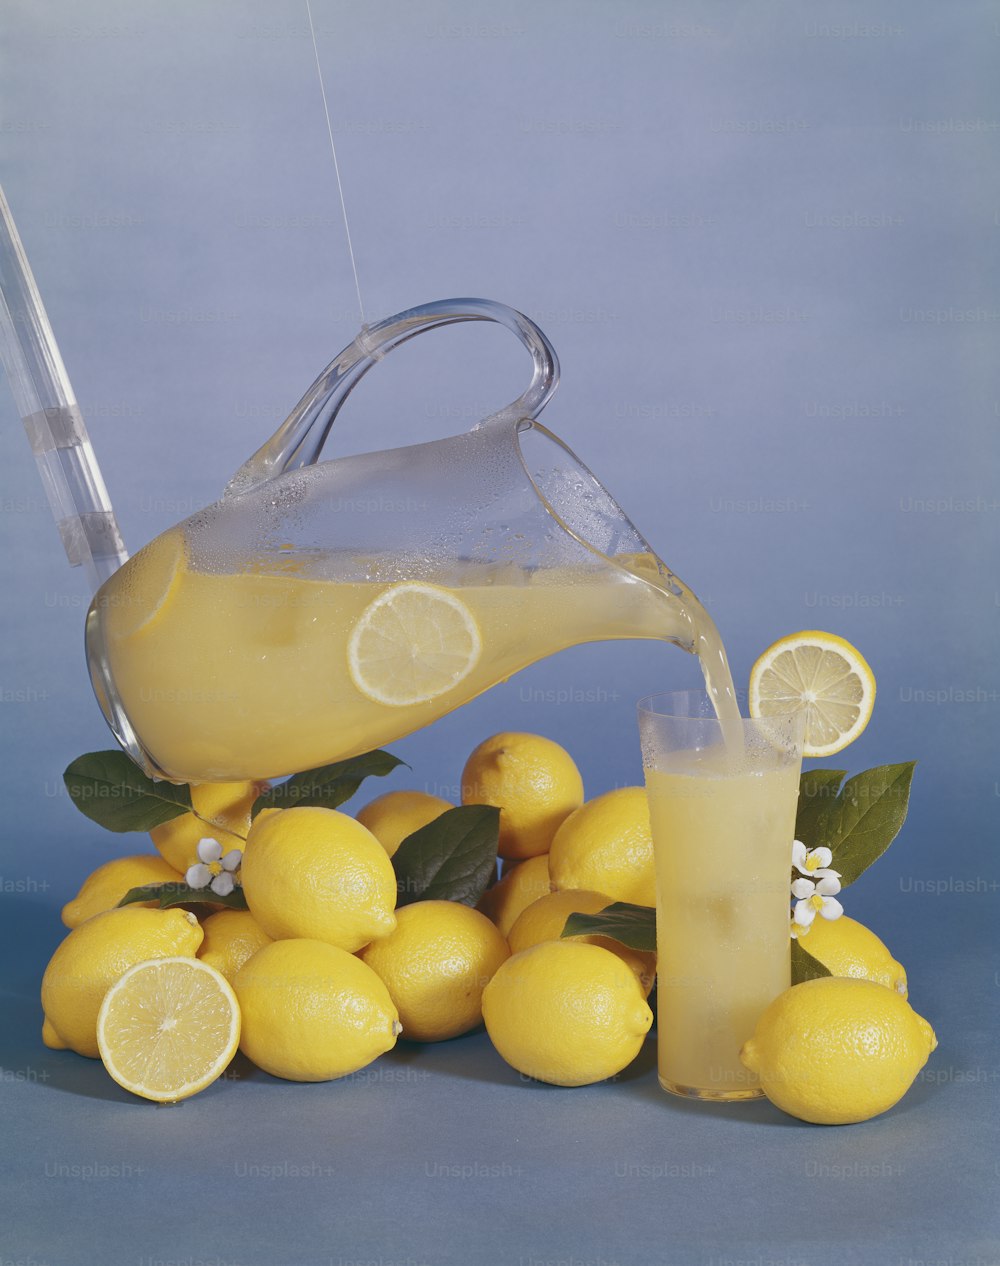 um jarro de limonada sendo derramado sobre uma pilha de limões